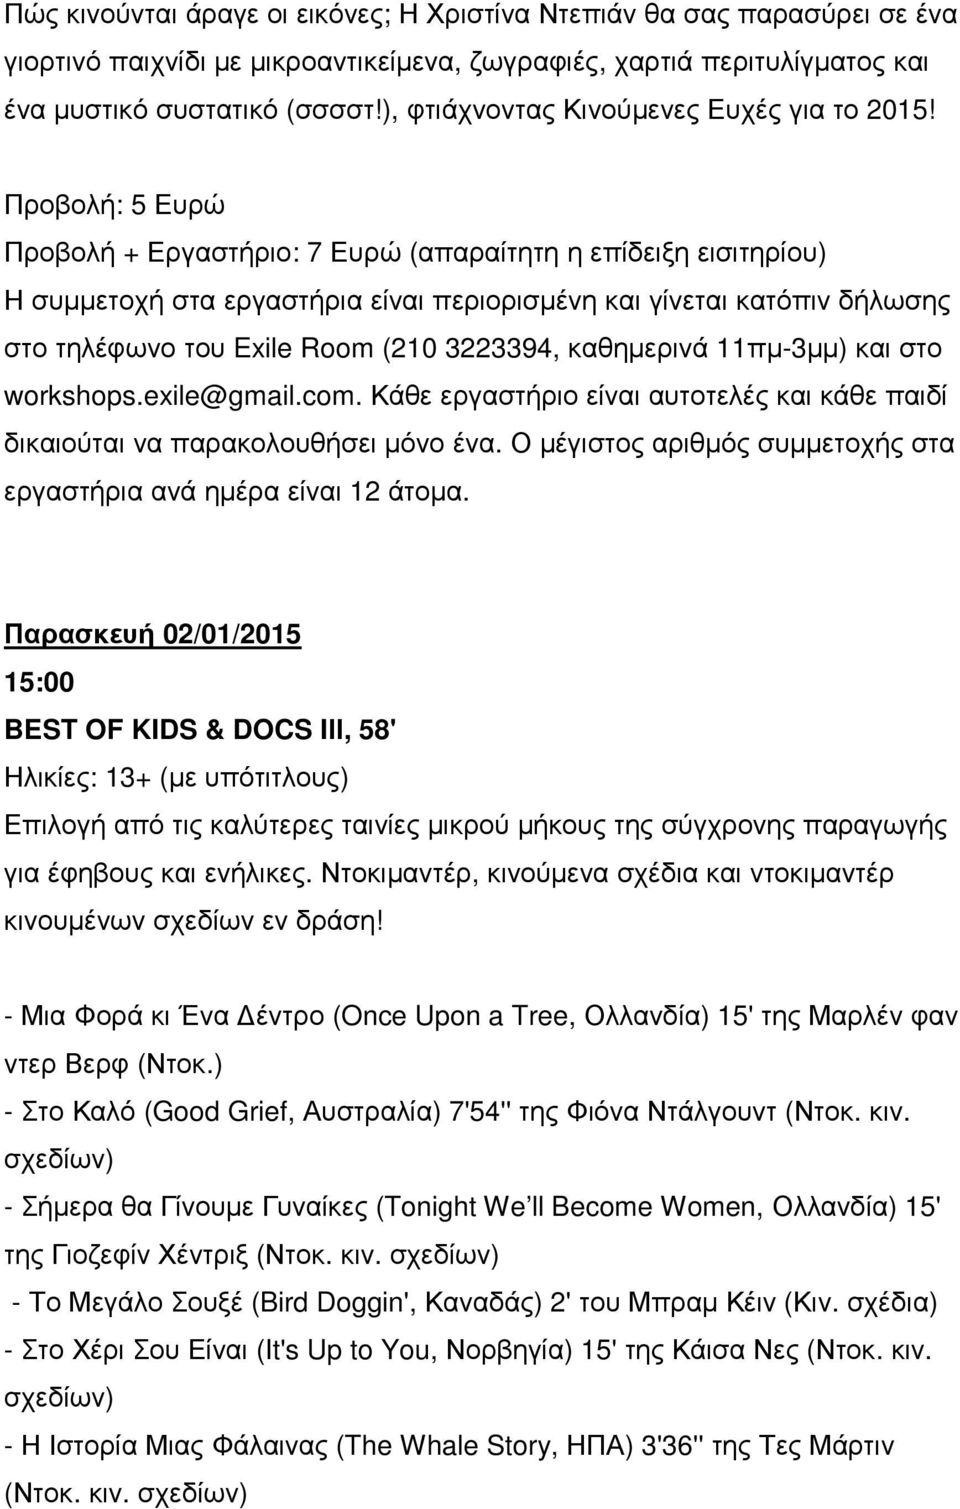 Παρασκευή 02/01/2015 BEST OF KIDS & DOCS IΙΙ, 58' Ηλικίες: 13+ (µε υπότιτλους) Επιλογή από τις καλύτερες ταινίες µικρού µήκους της σύγχρονης παραγωγής για έφηβους και ενήλικες.